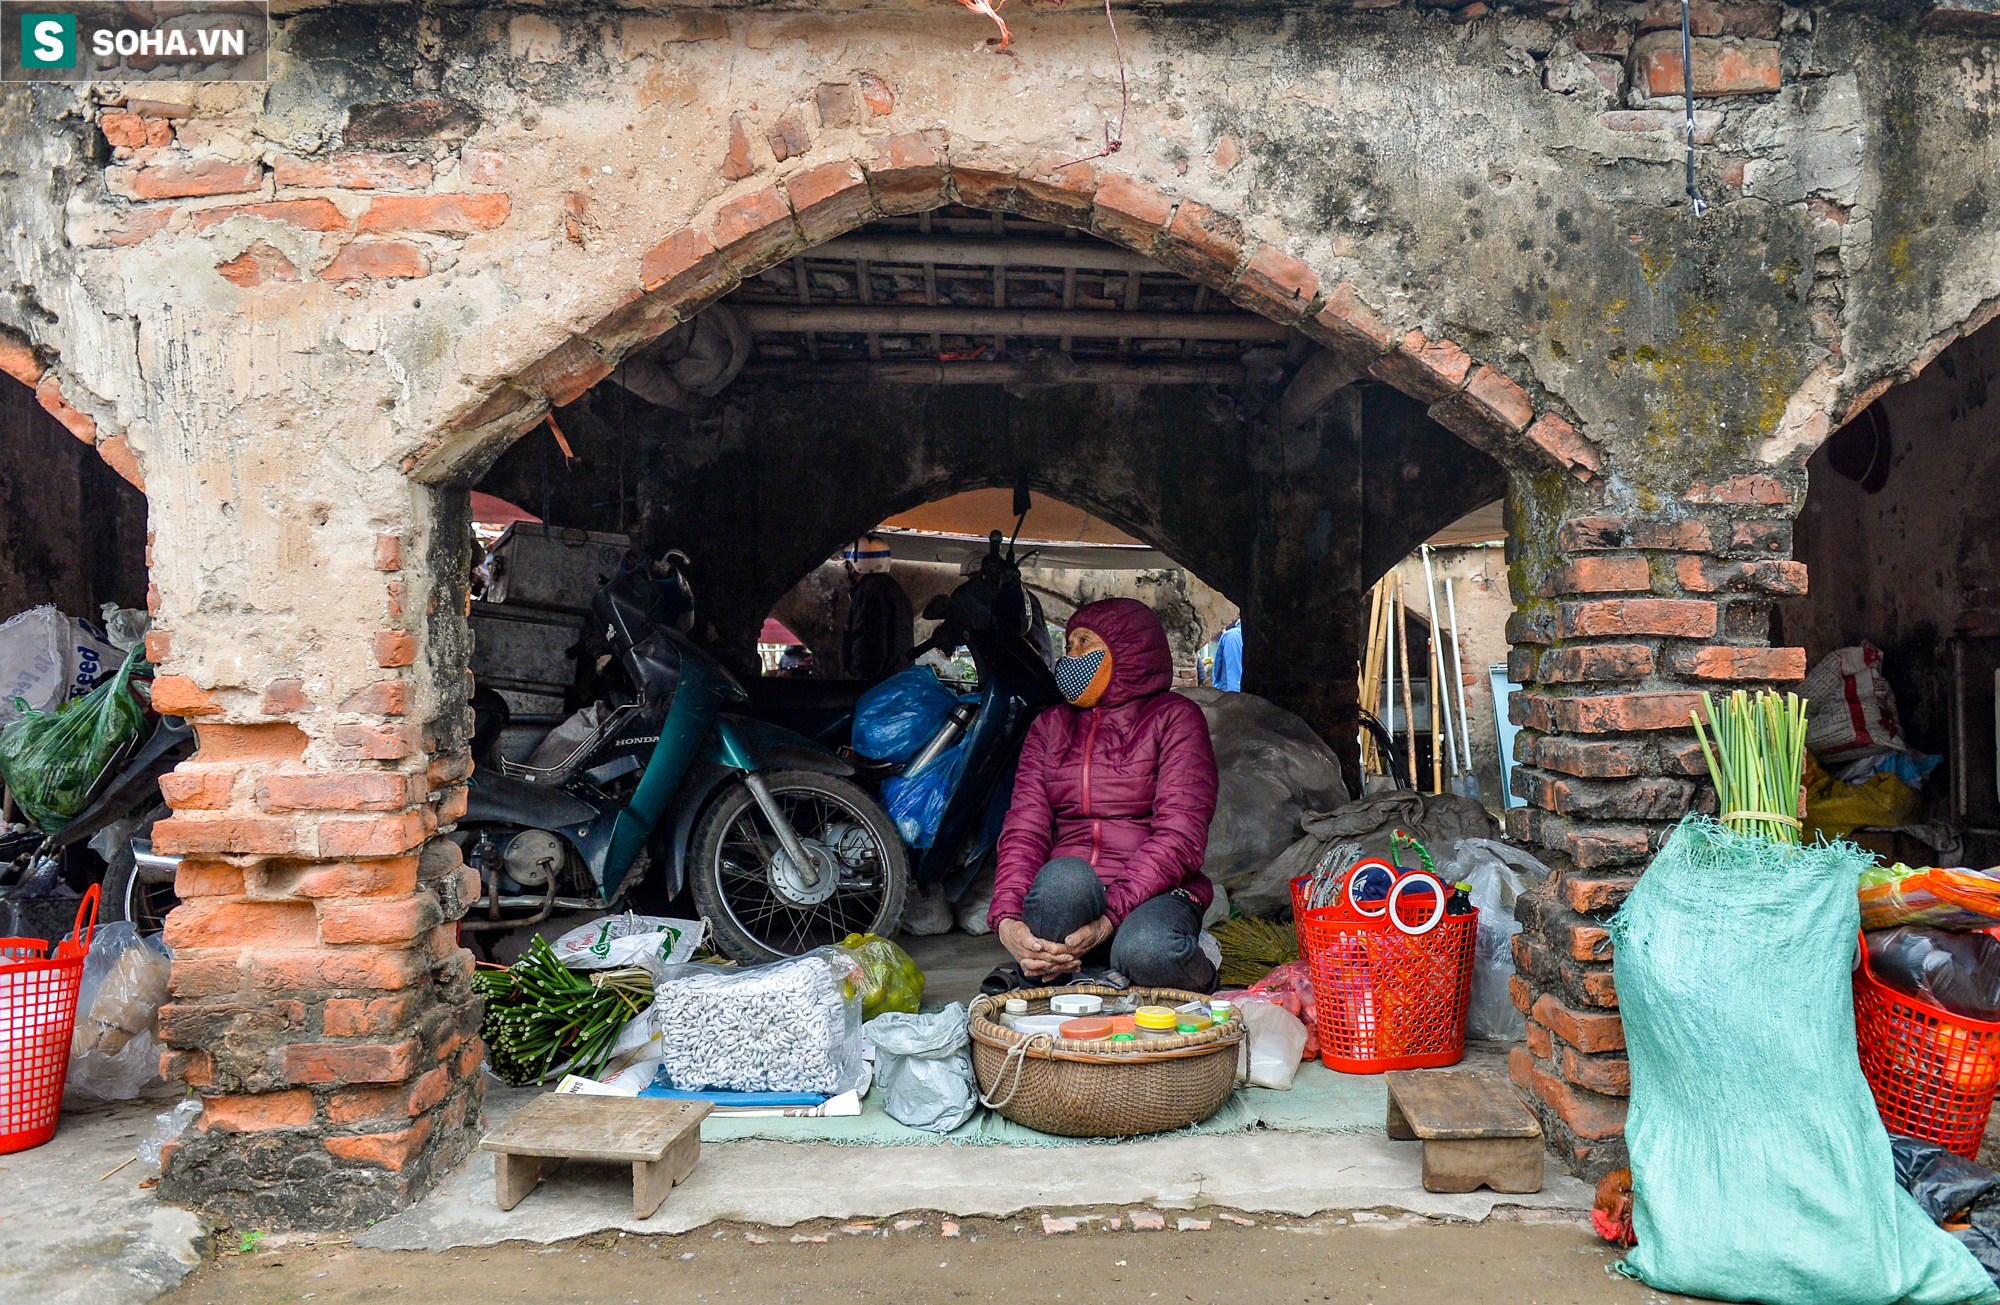 Nam Định: Phiên giáp Tết ở một chợ cổ có tuổi đời gần 700 năm - Ảnh 3.